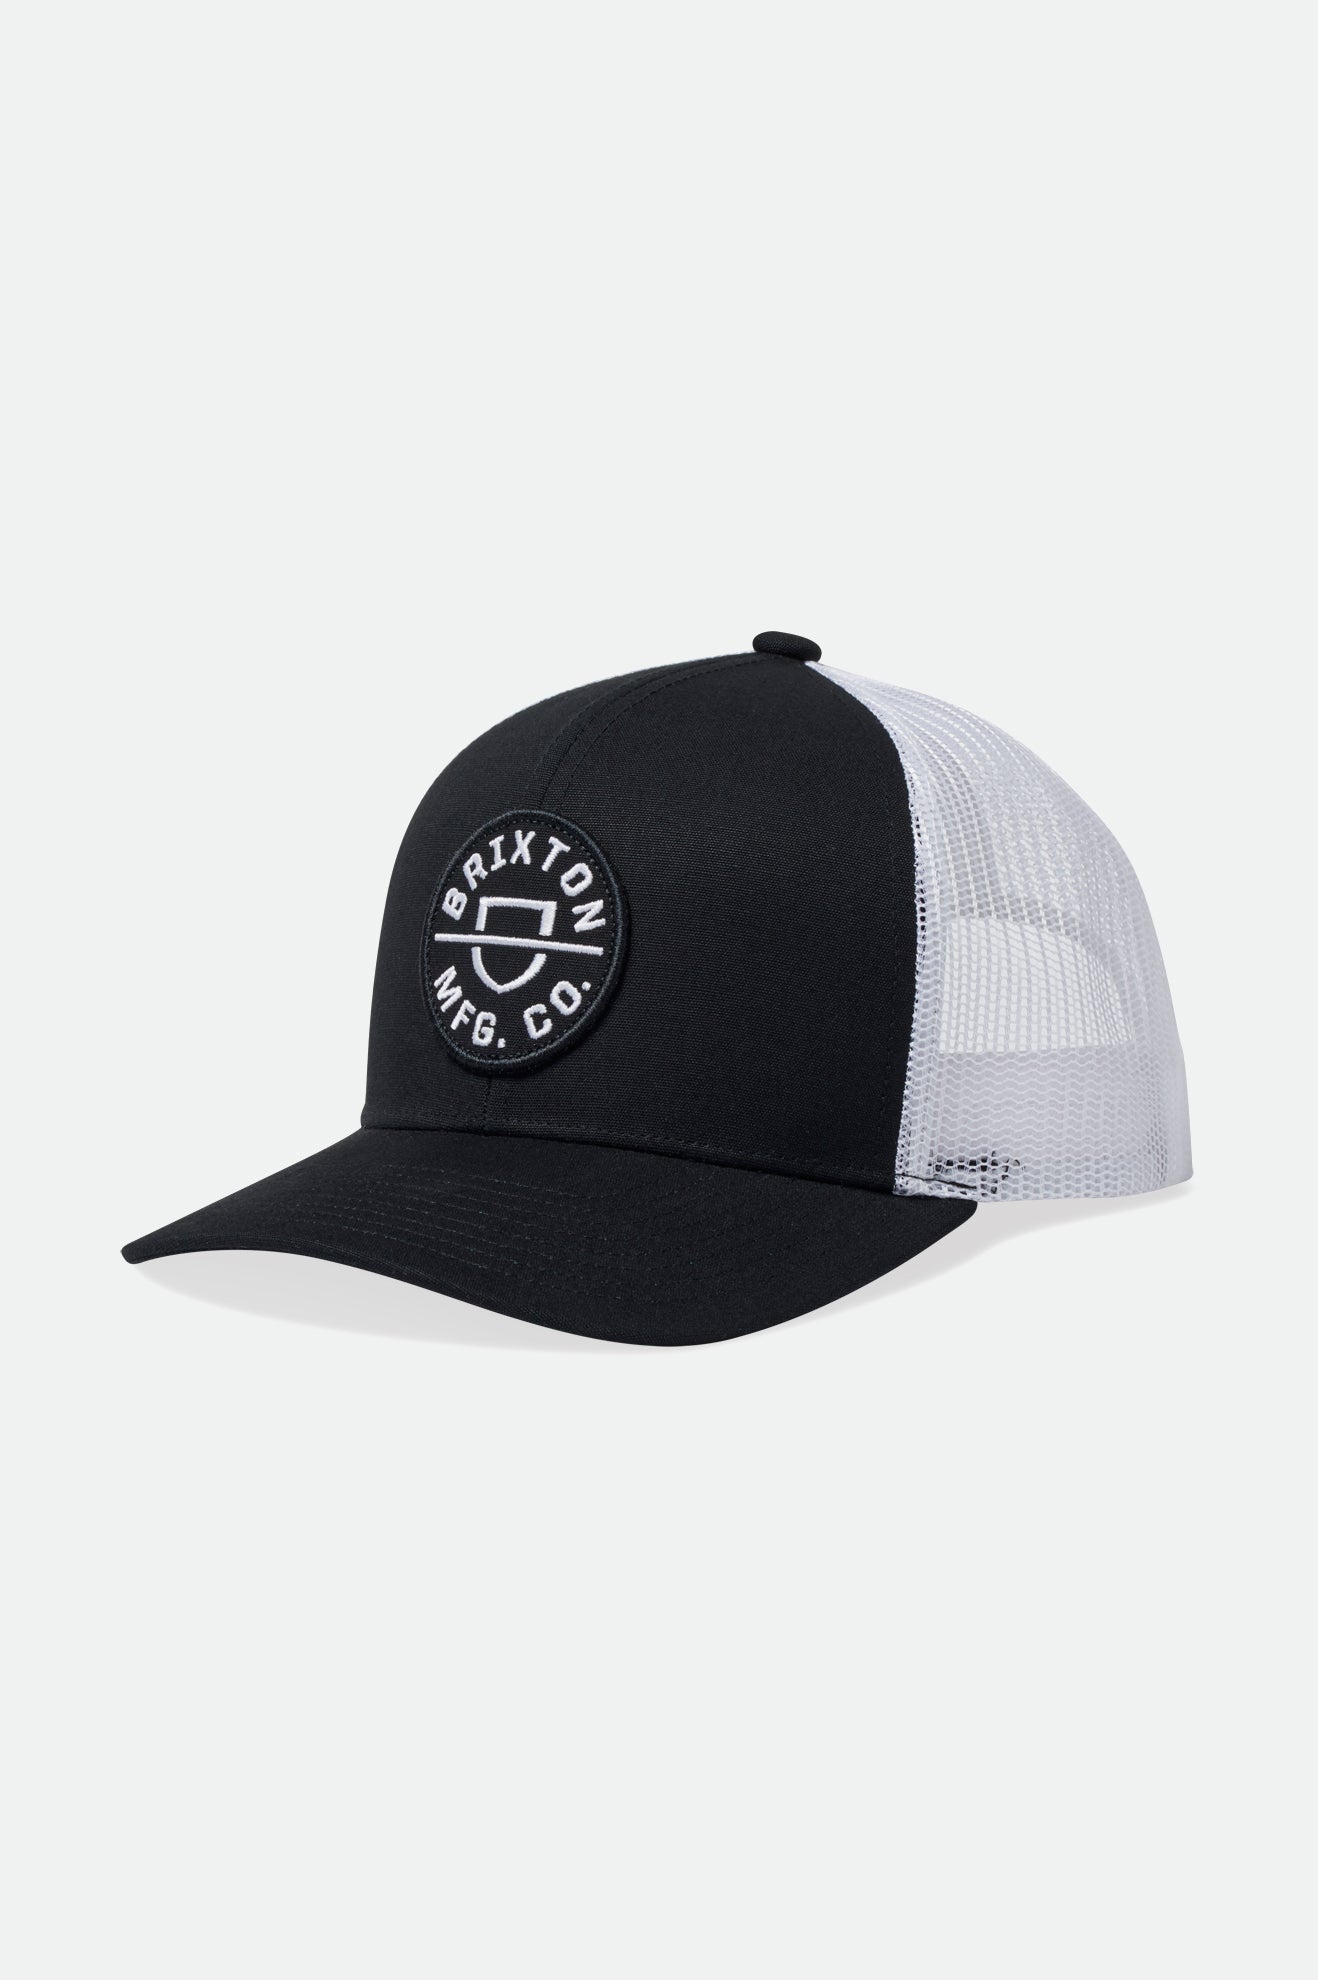 Crest NetPlus MP Trucker Hat - Black